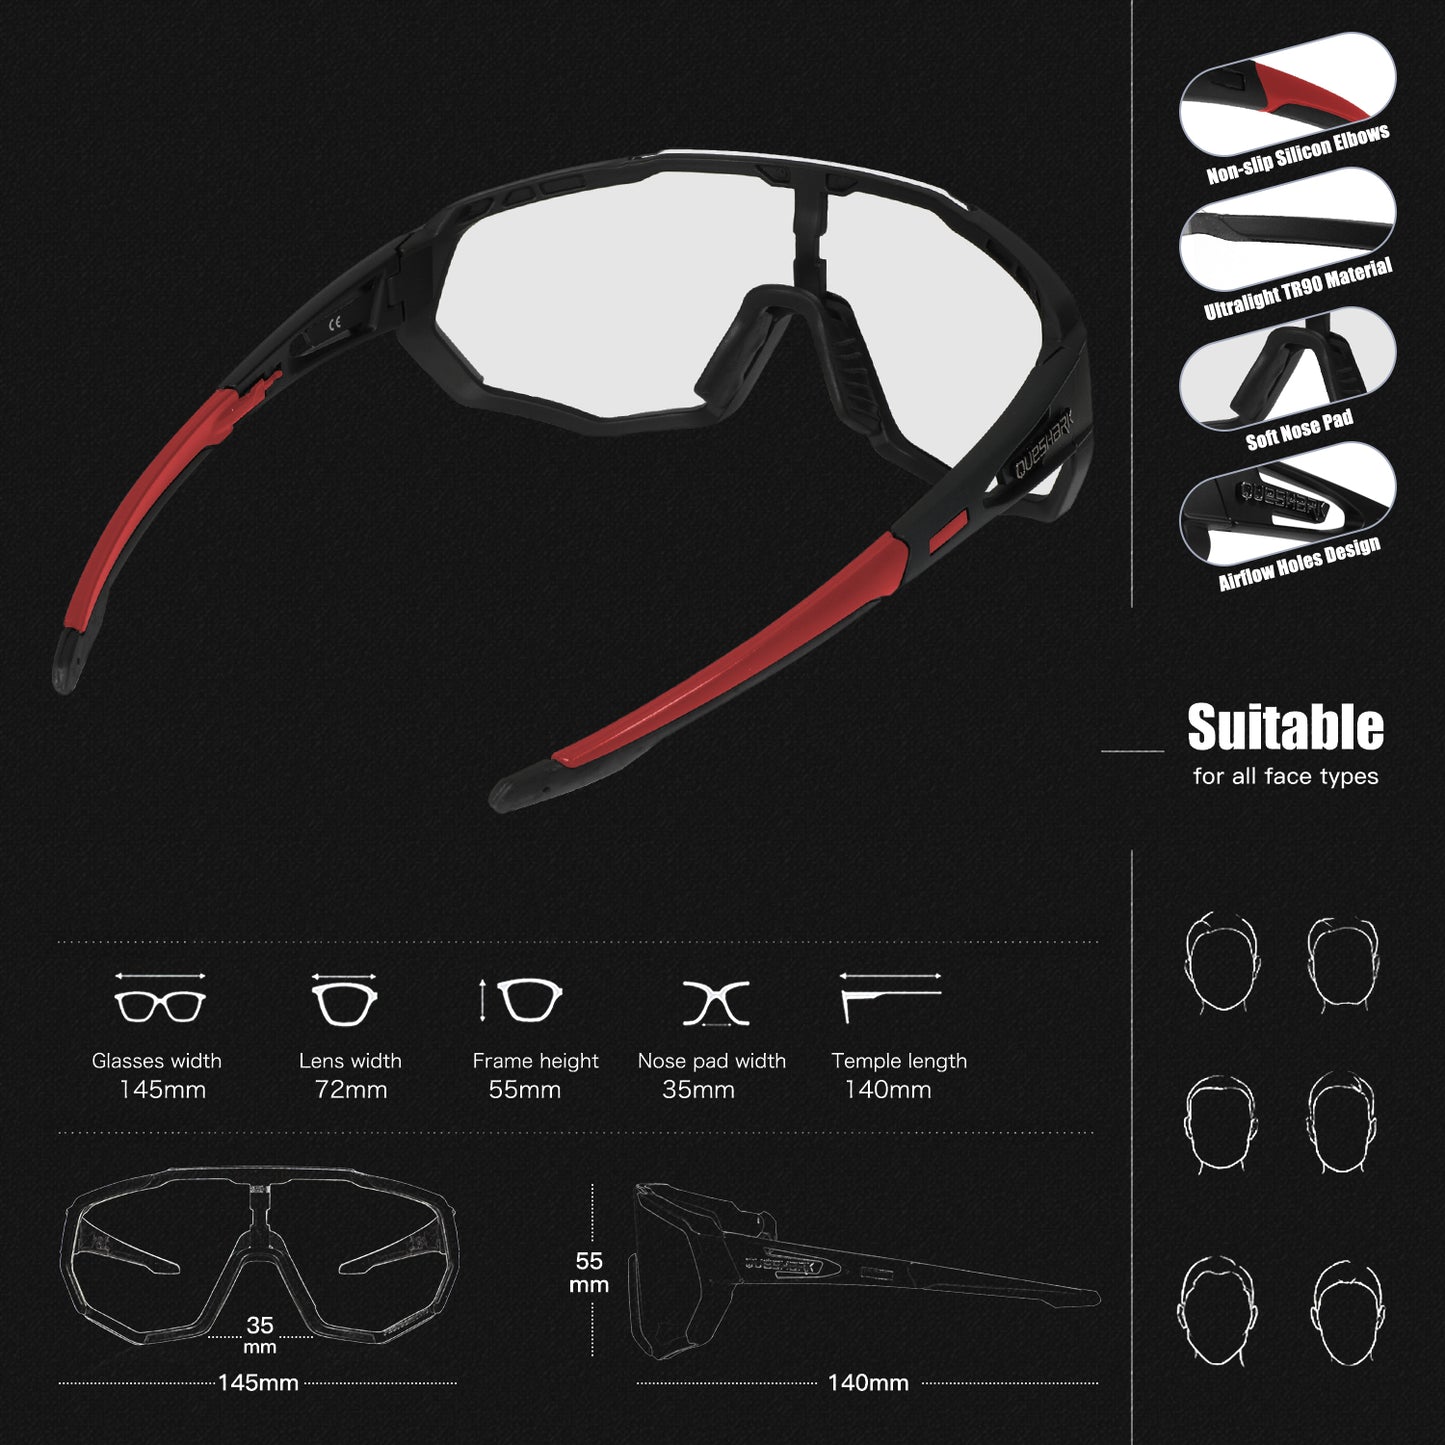 QE48 BS Queshark Gafas de sol fotocromáticas para hombres Mujeres Gafas de seguridad para ciclismo Protección UV Deporte al aire libre MTB Negro Rojo